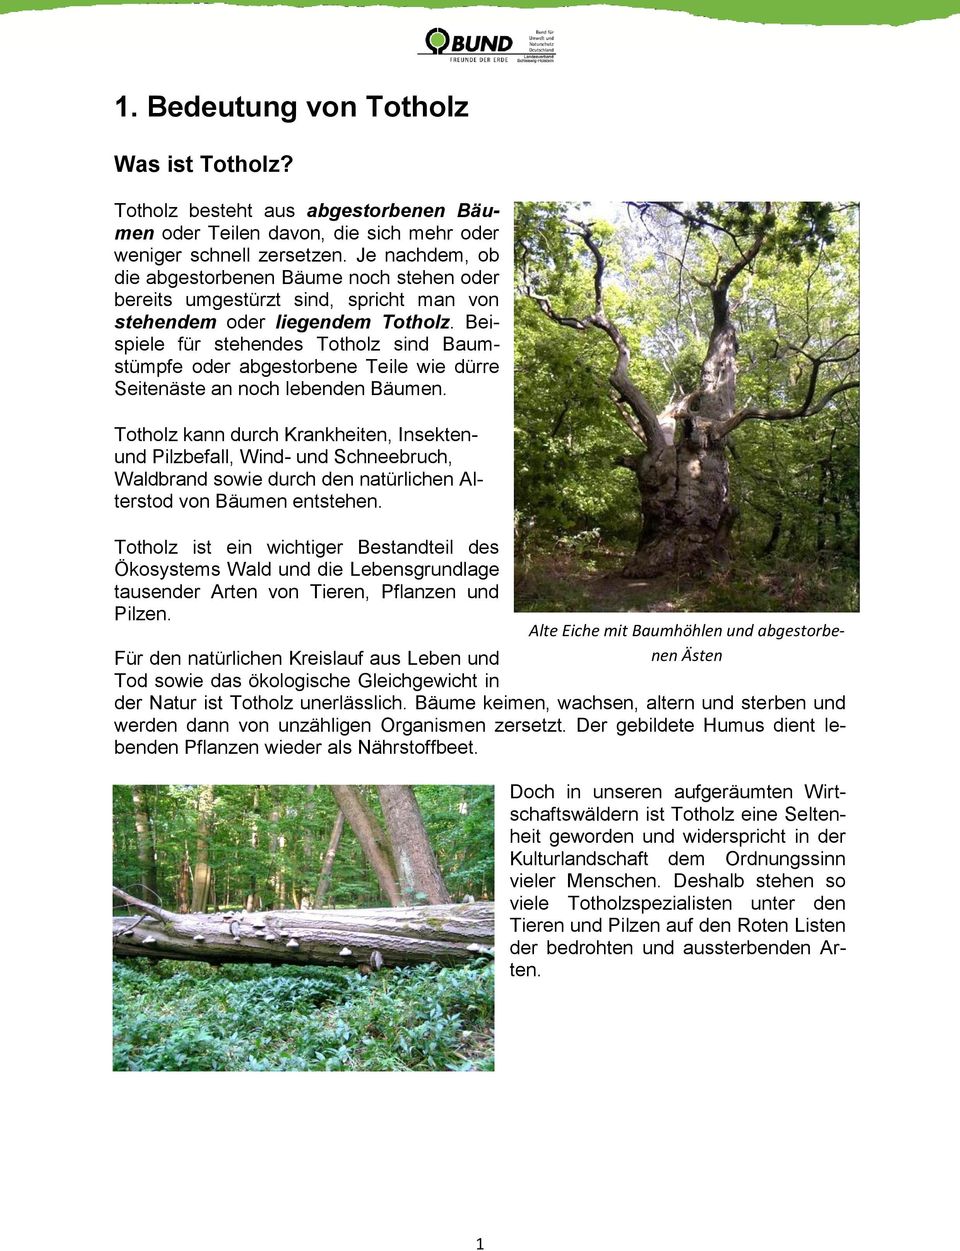 Beispiele für stehendes Totholz sind Baumstümpfe oder abgestorbene Teile wie dürre Seitenäste an noch lebenden Bäumen.